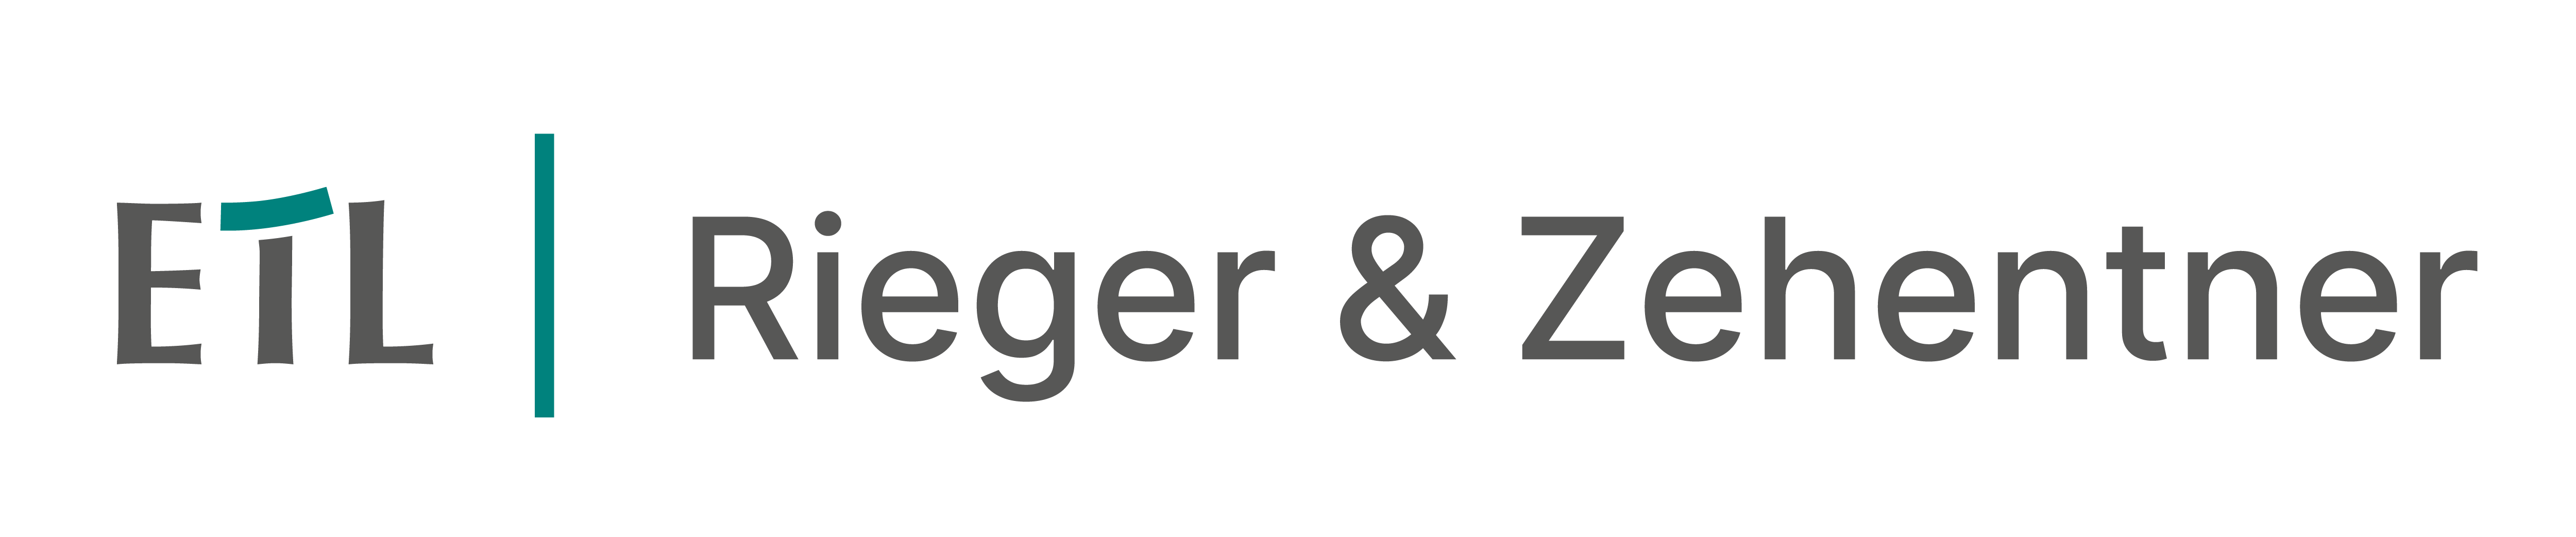 ETL | Rieger, Zehentner & Kollegen GmbH Steuerberatungsgesellschaft